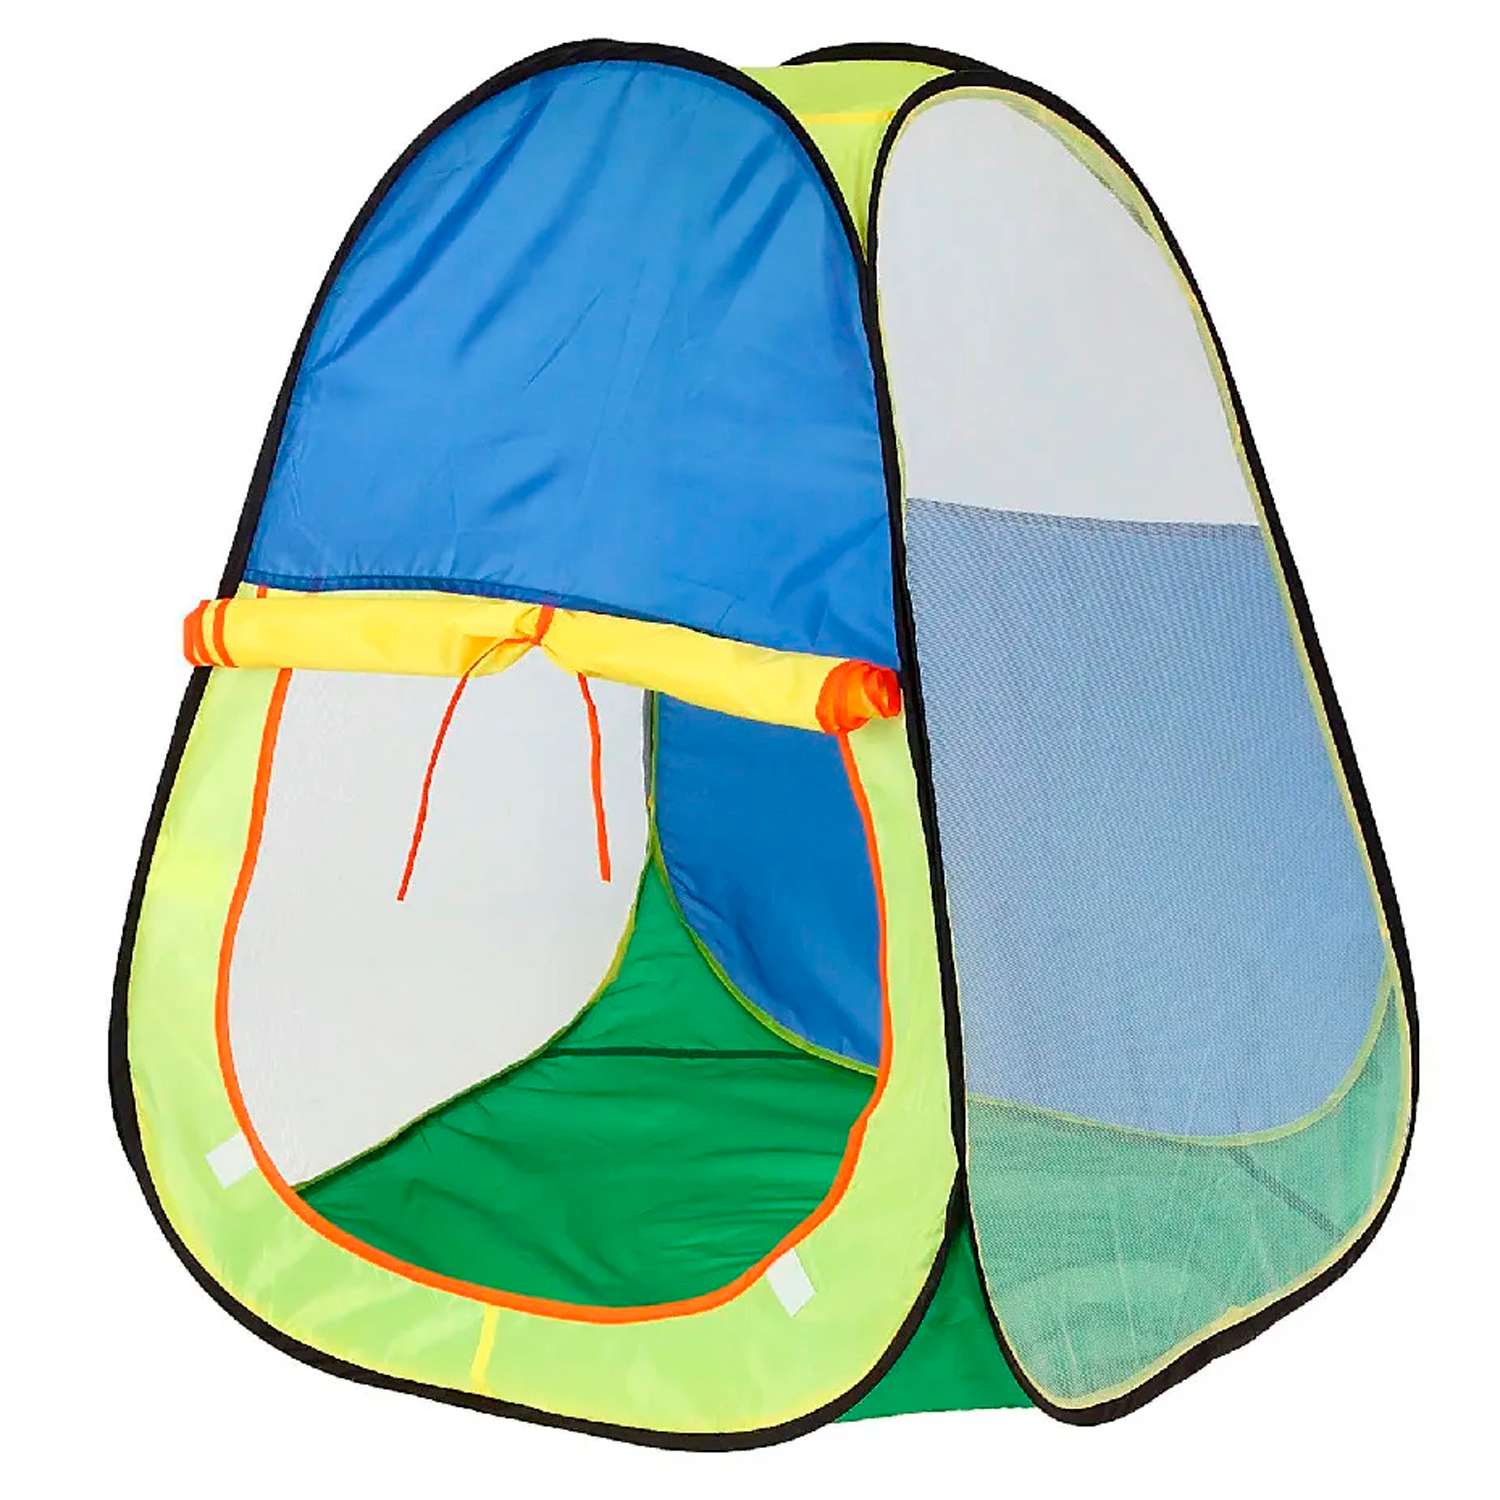 Игровая палатка Avocadoffka разноцветная - фото 1